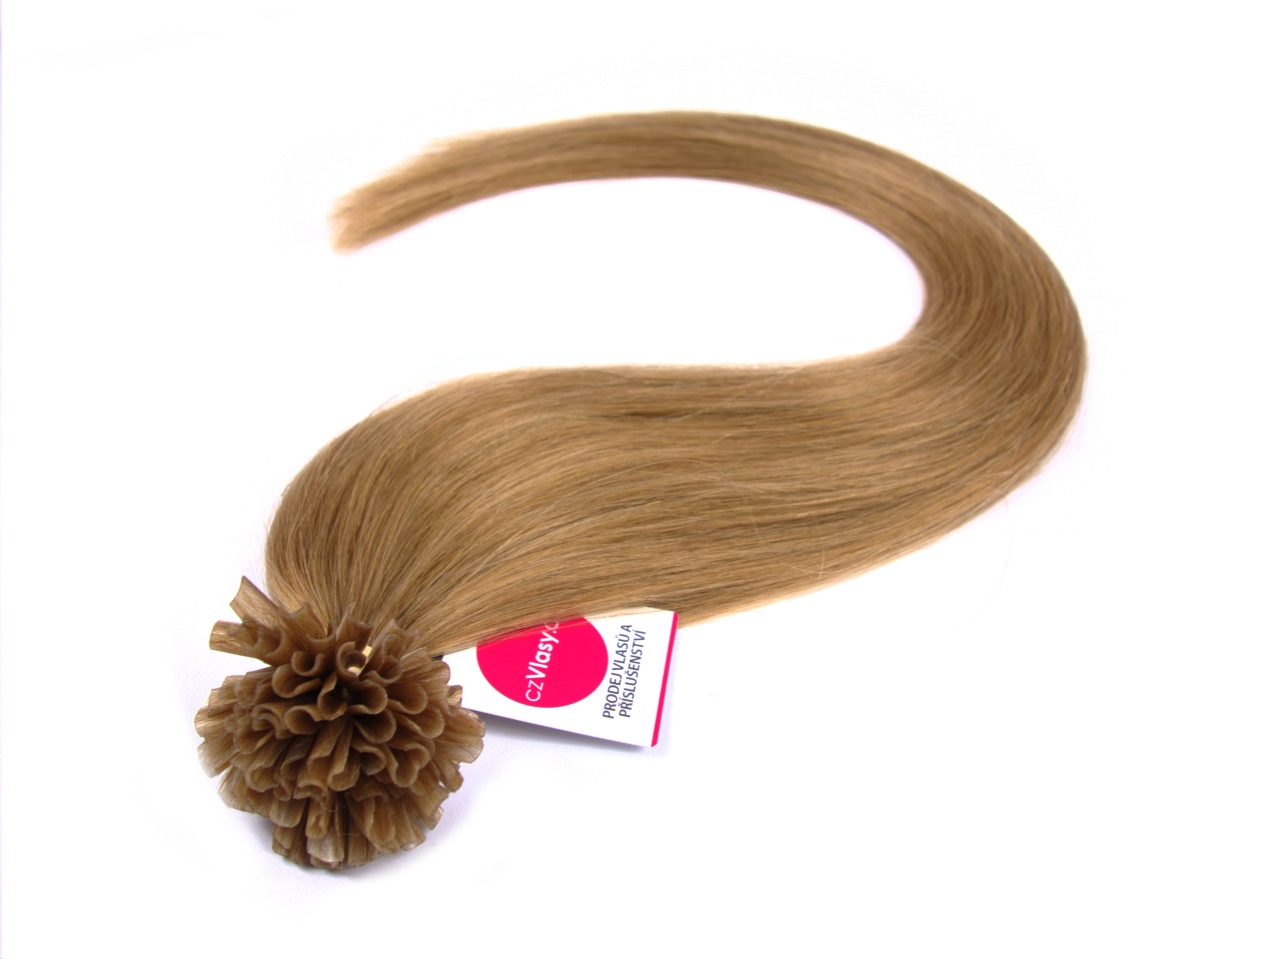 Asijské vlasy na metodu keratin odstín 18 Délka: 51 cm, Hmotnost: 0,5 g/pramínek, REMY kvalita